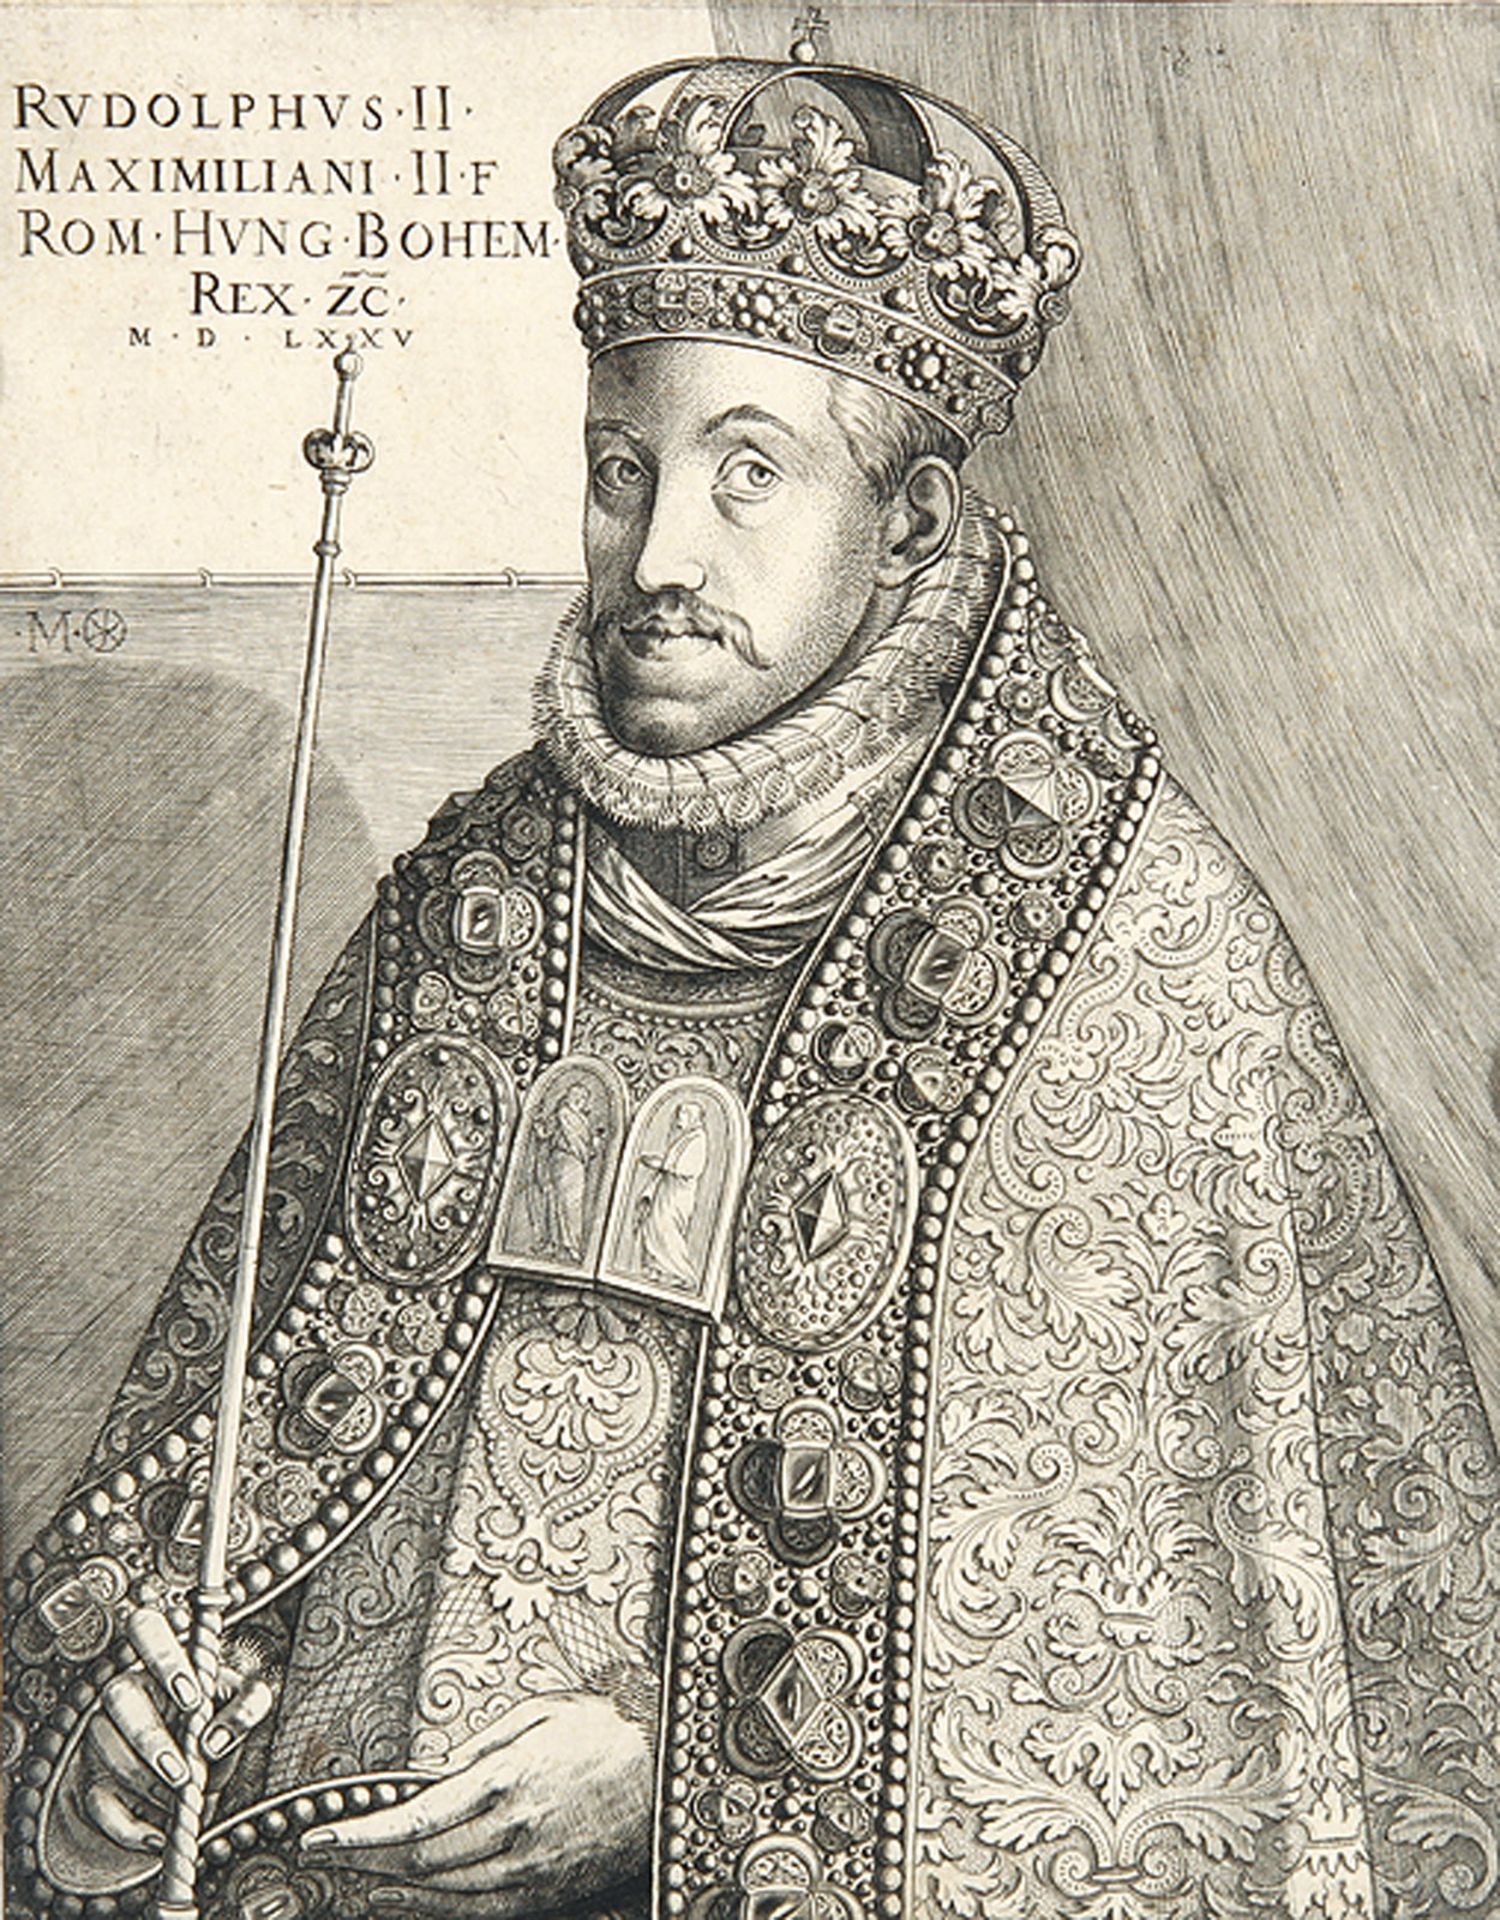 VARIA - PORTRÄTS: Kaiser Rudolph II.